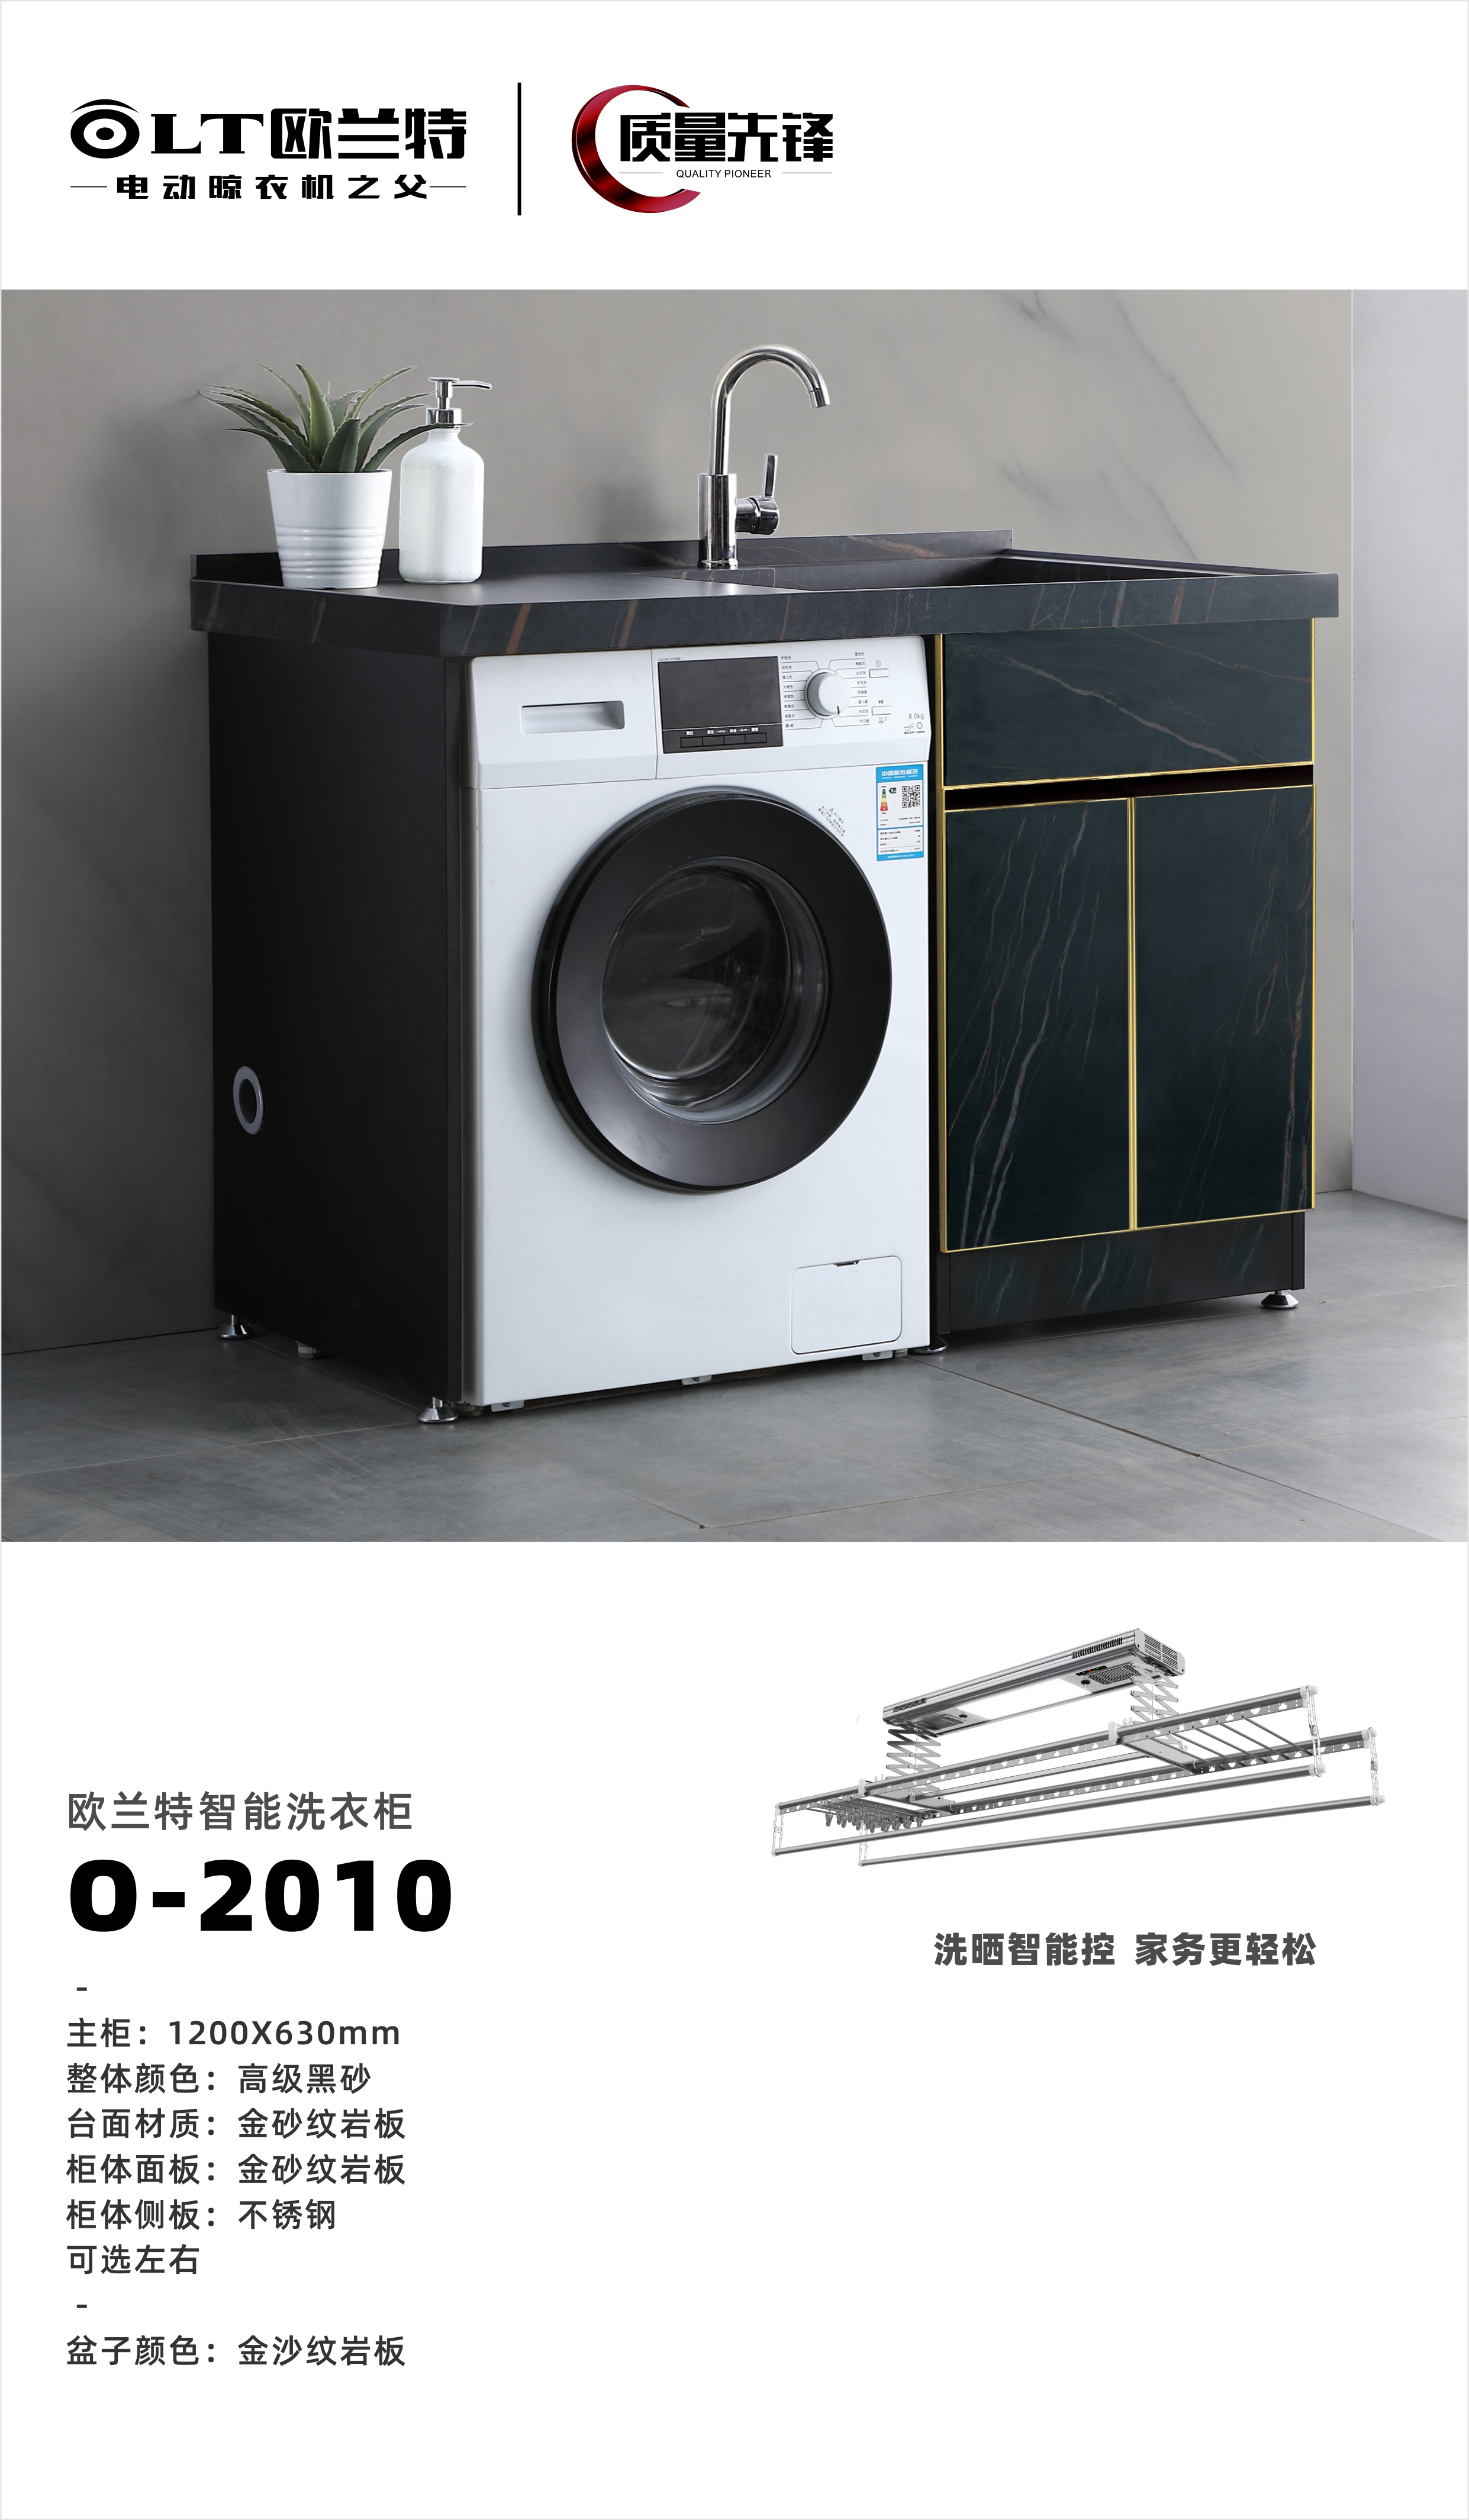 欧兰特智能洗衣柜O-2010